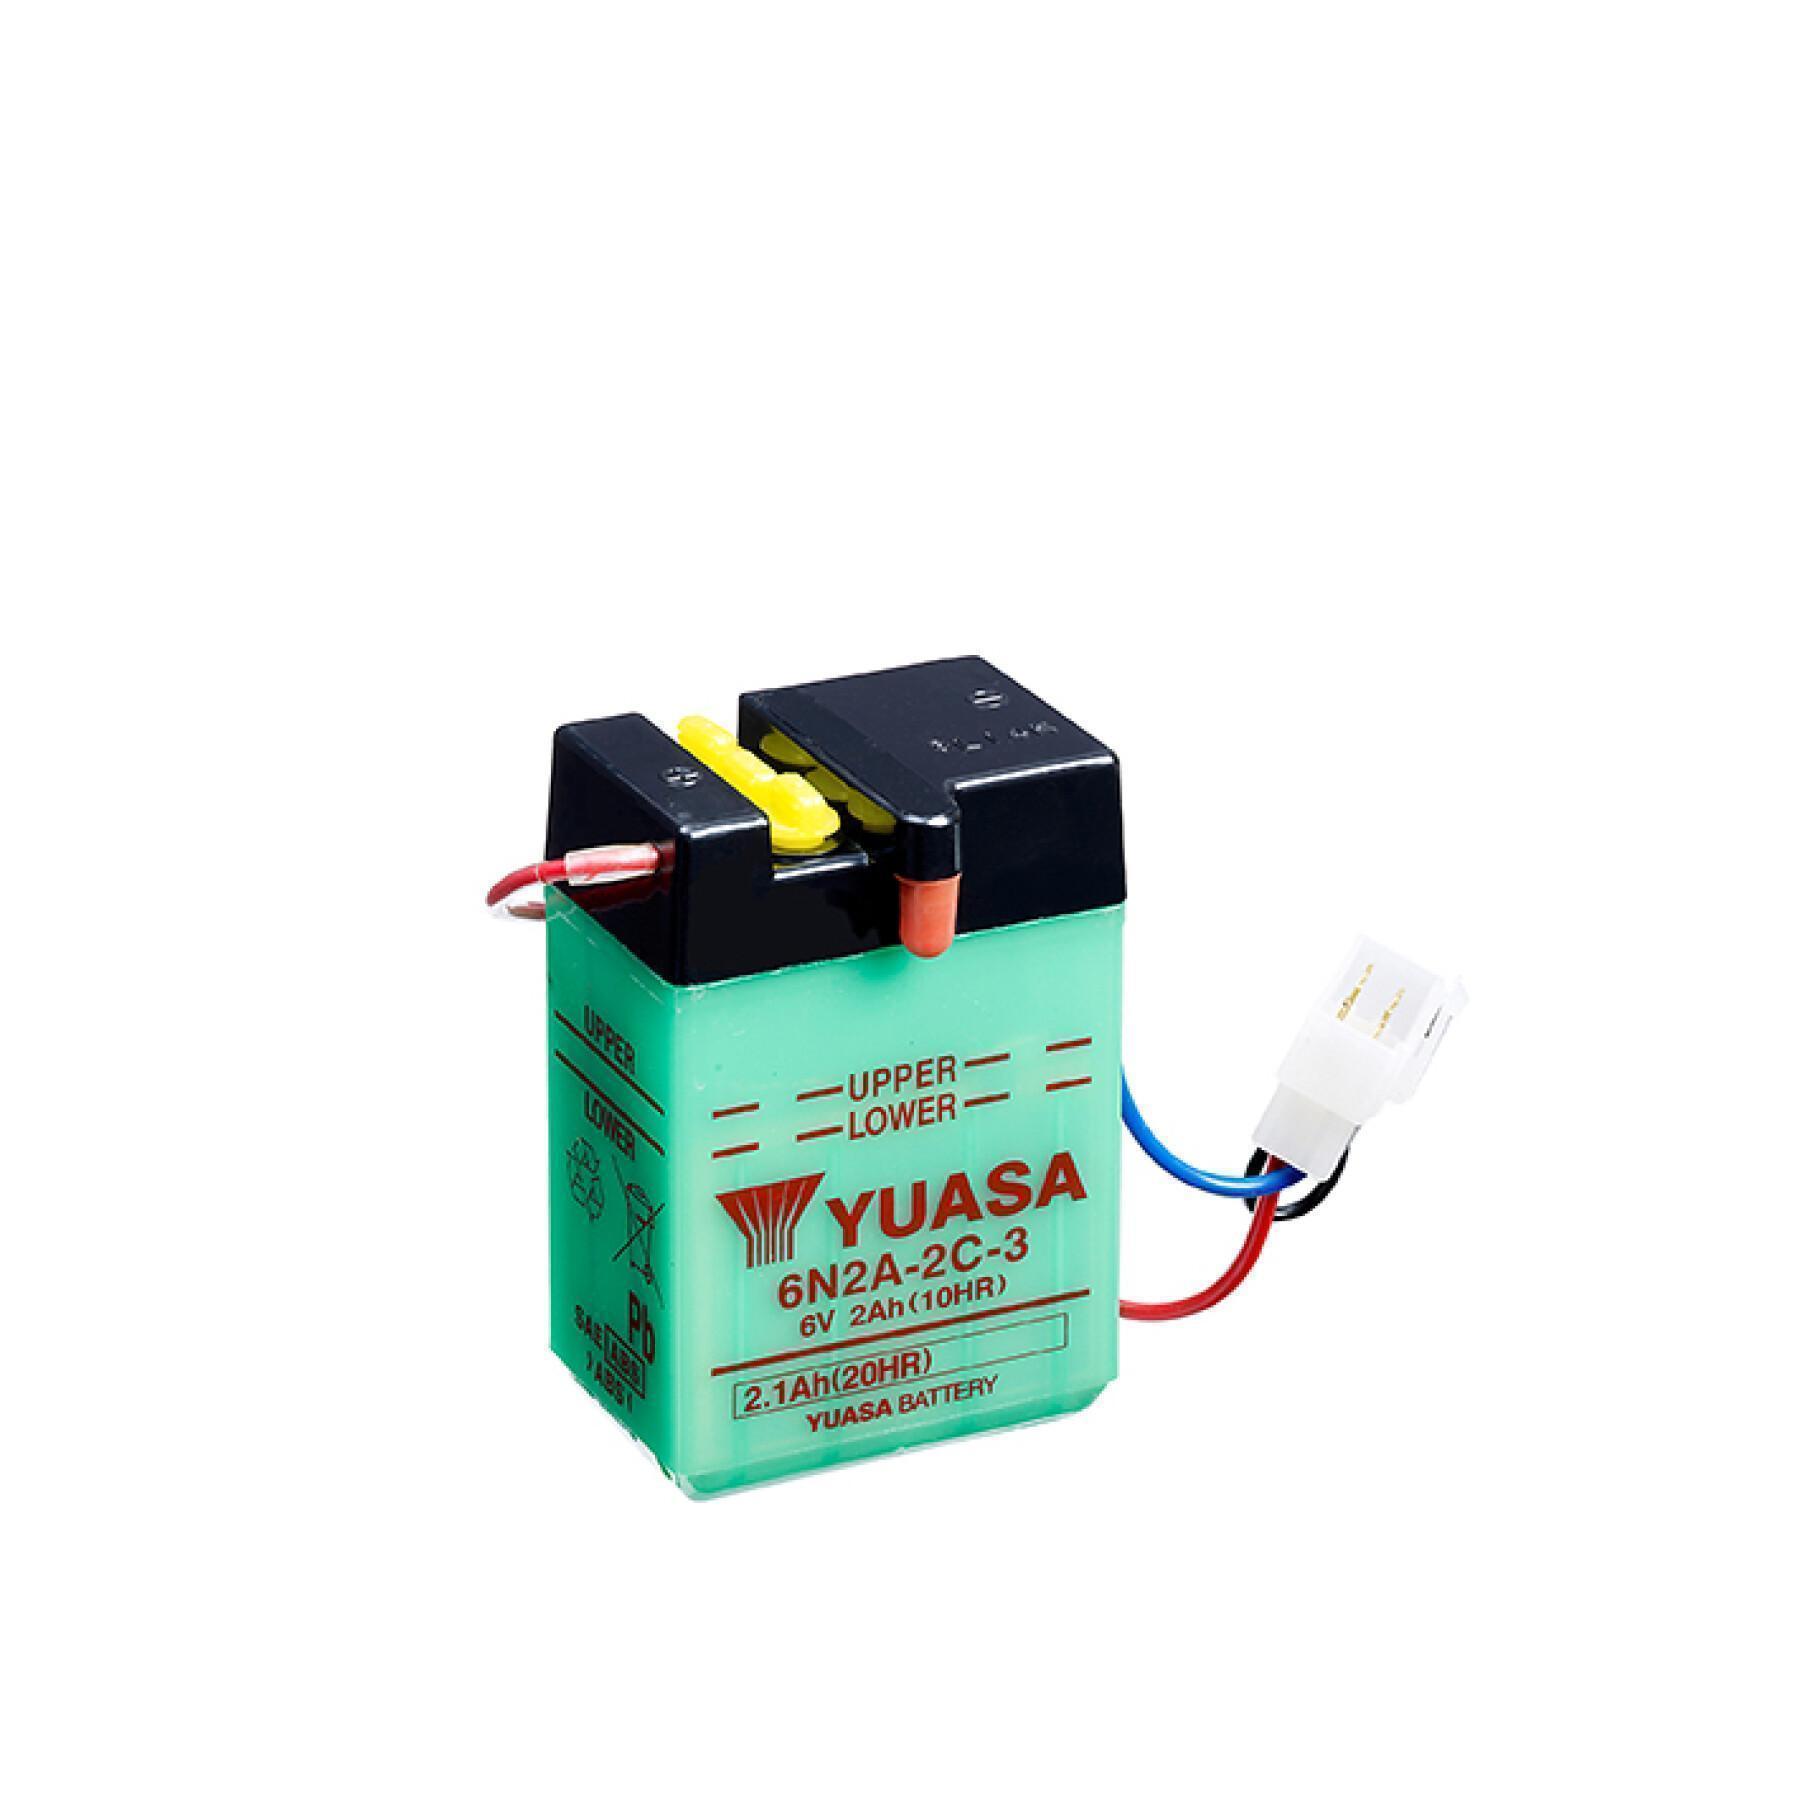 Batteri för motorcykel Yuasa 6N2A-2C-3